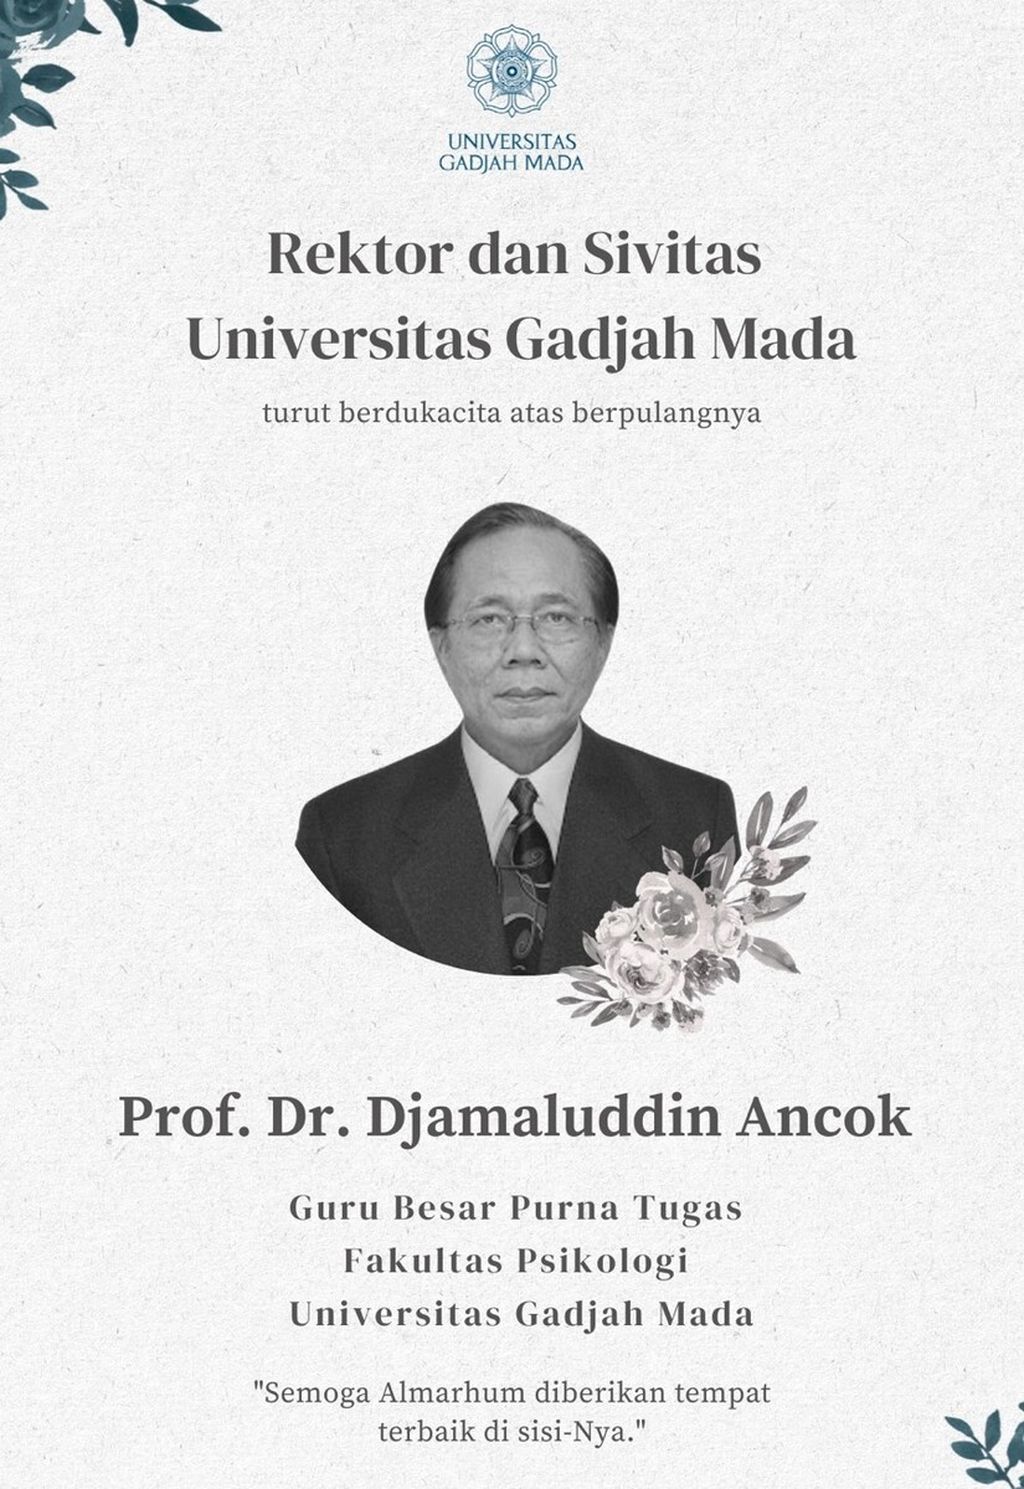 Ucapan dukacita atas meninggalnya Guru Besar Purnatugas Fakultas Psikologi Universitas Gadjah Mada, Djamaludin Ancok. 